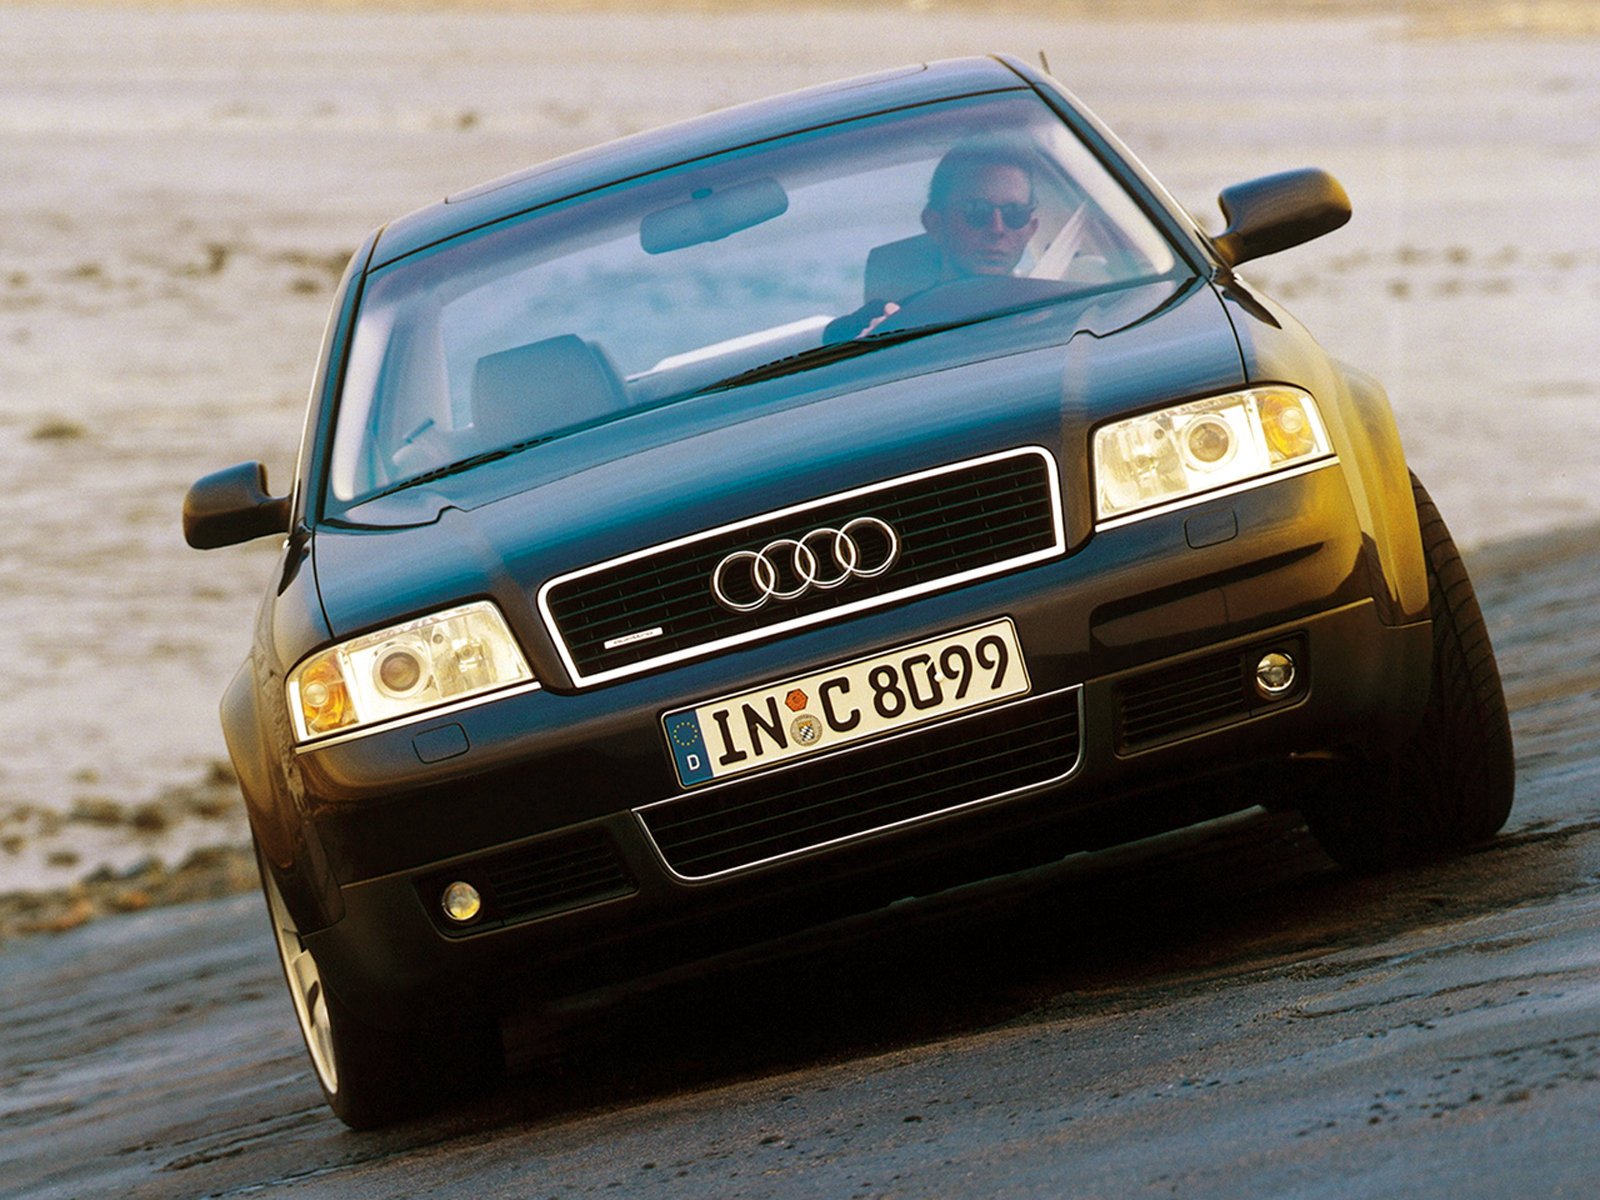 Ауди 4 2001 год. Audi a6 c5 1999. Аууда6с5 кватро. Audi a6 с5. Ауди а6 с5 кватро.